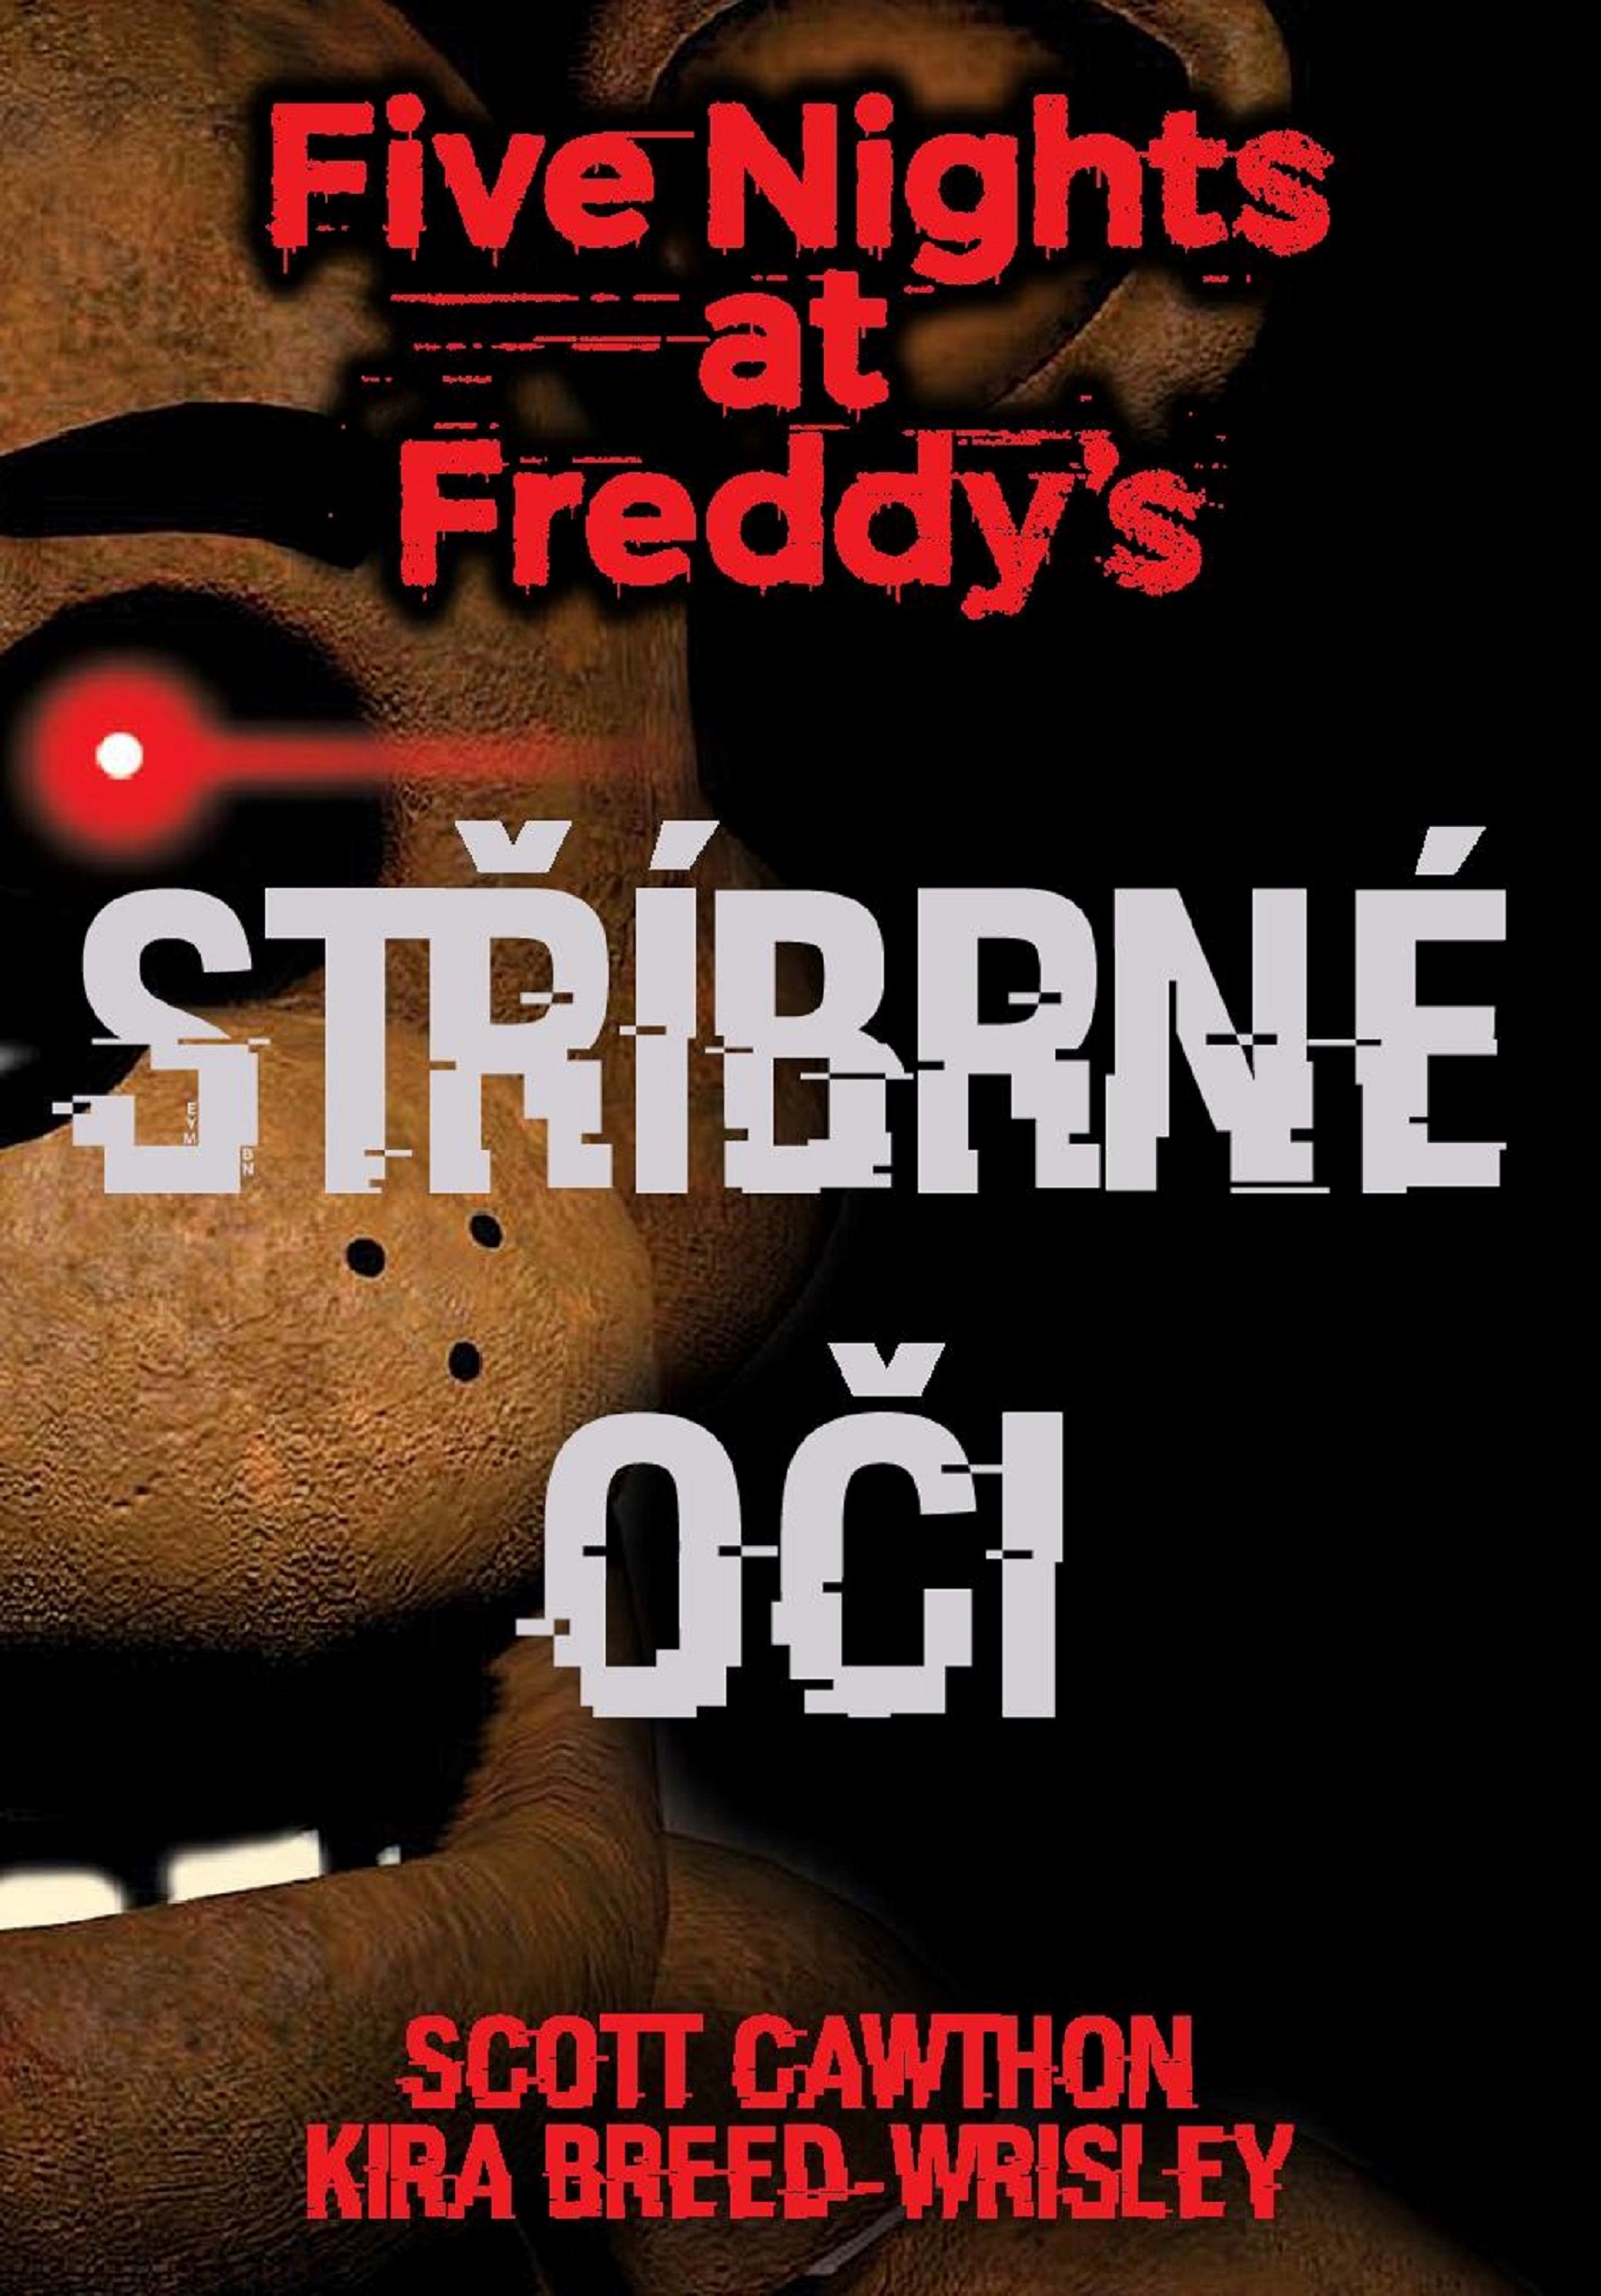 Five Nights at Freddy's Stříbrné oči